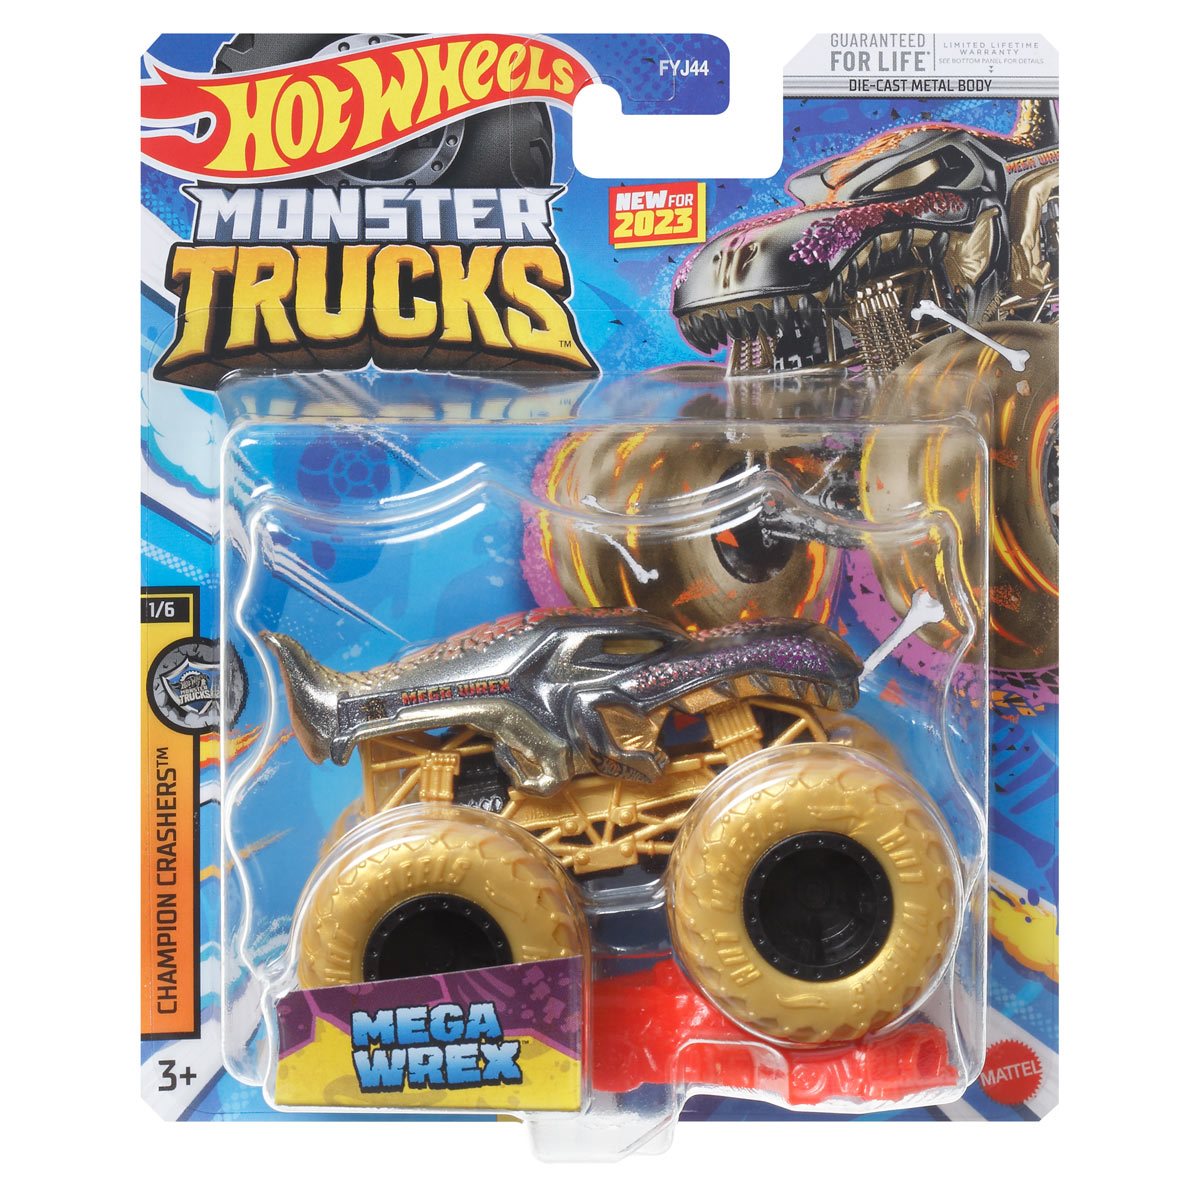 Hot Wheels® Monster Trucks Trucks 1:64 Assortment